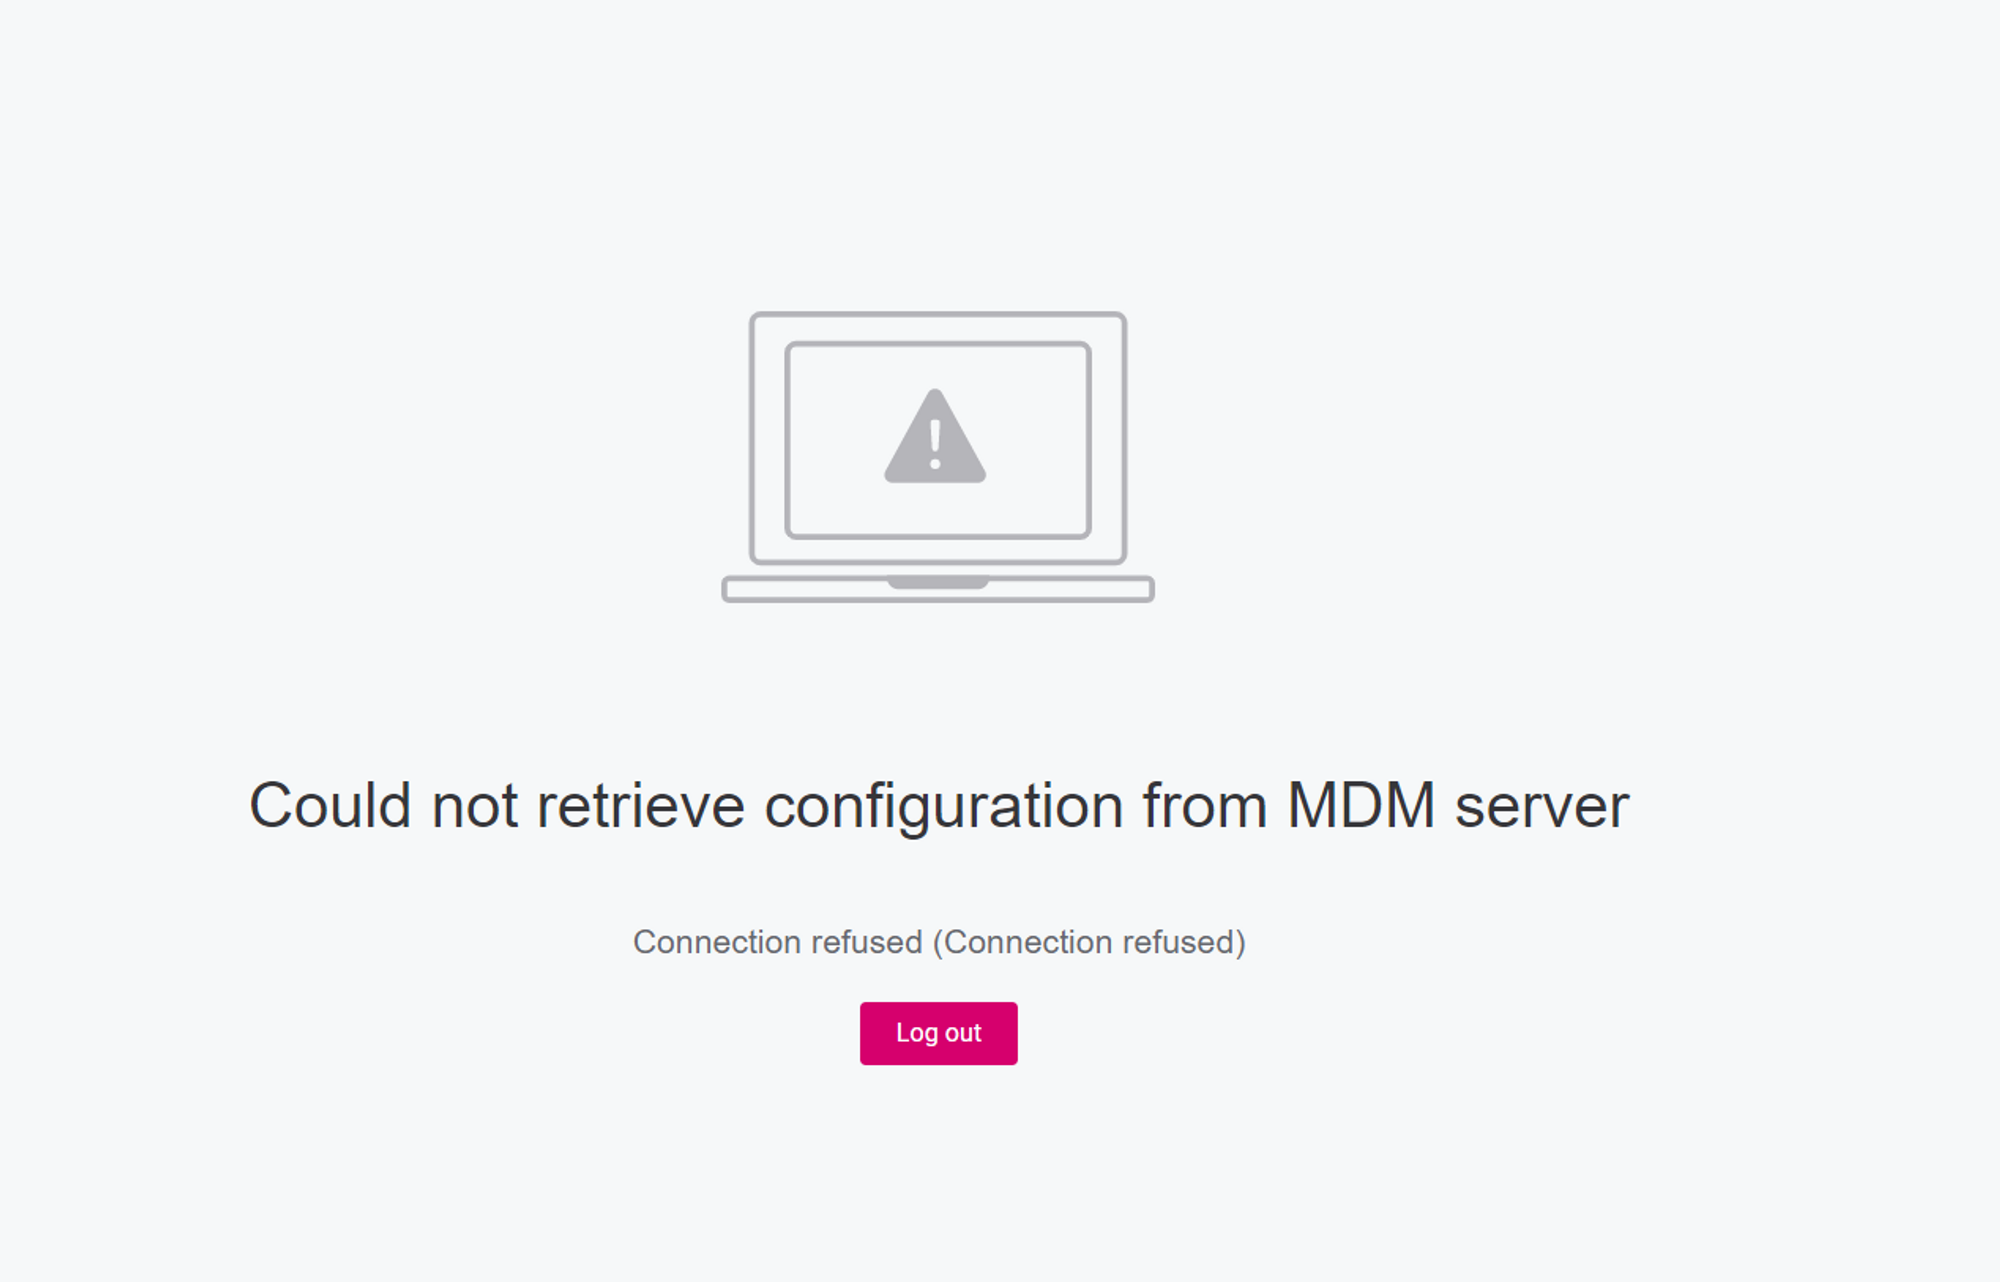 MDM Server failure message